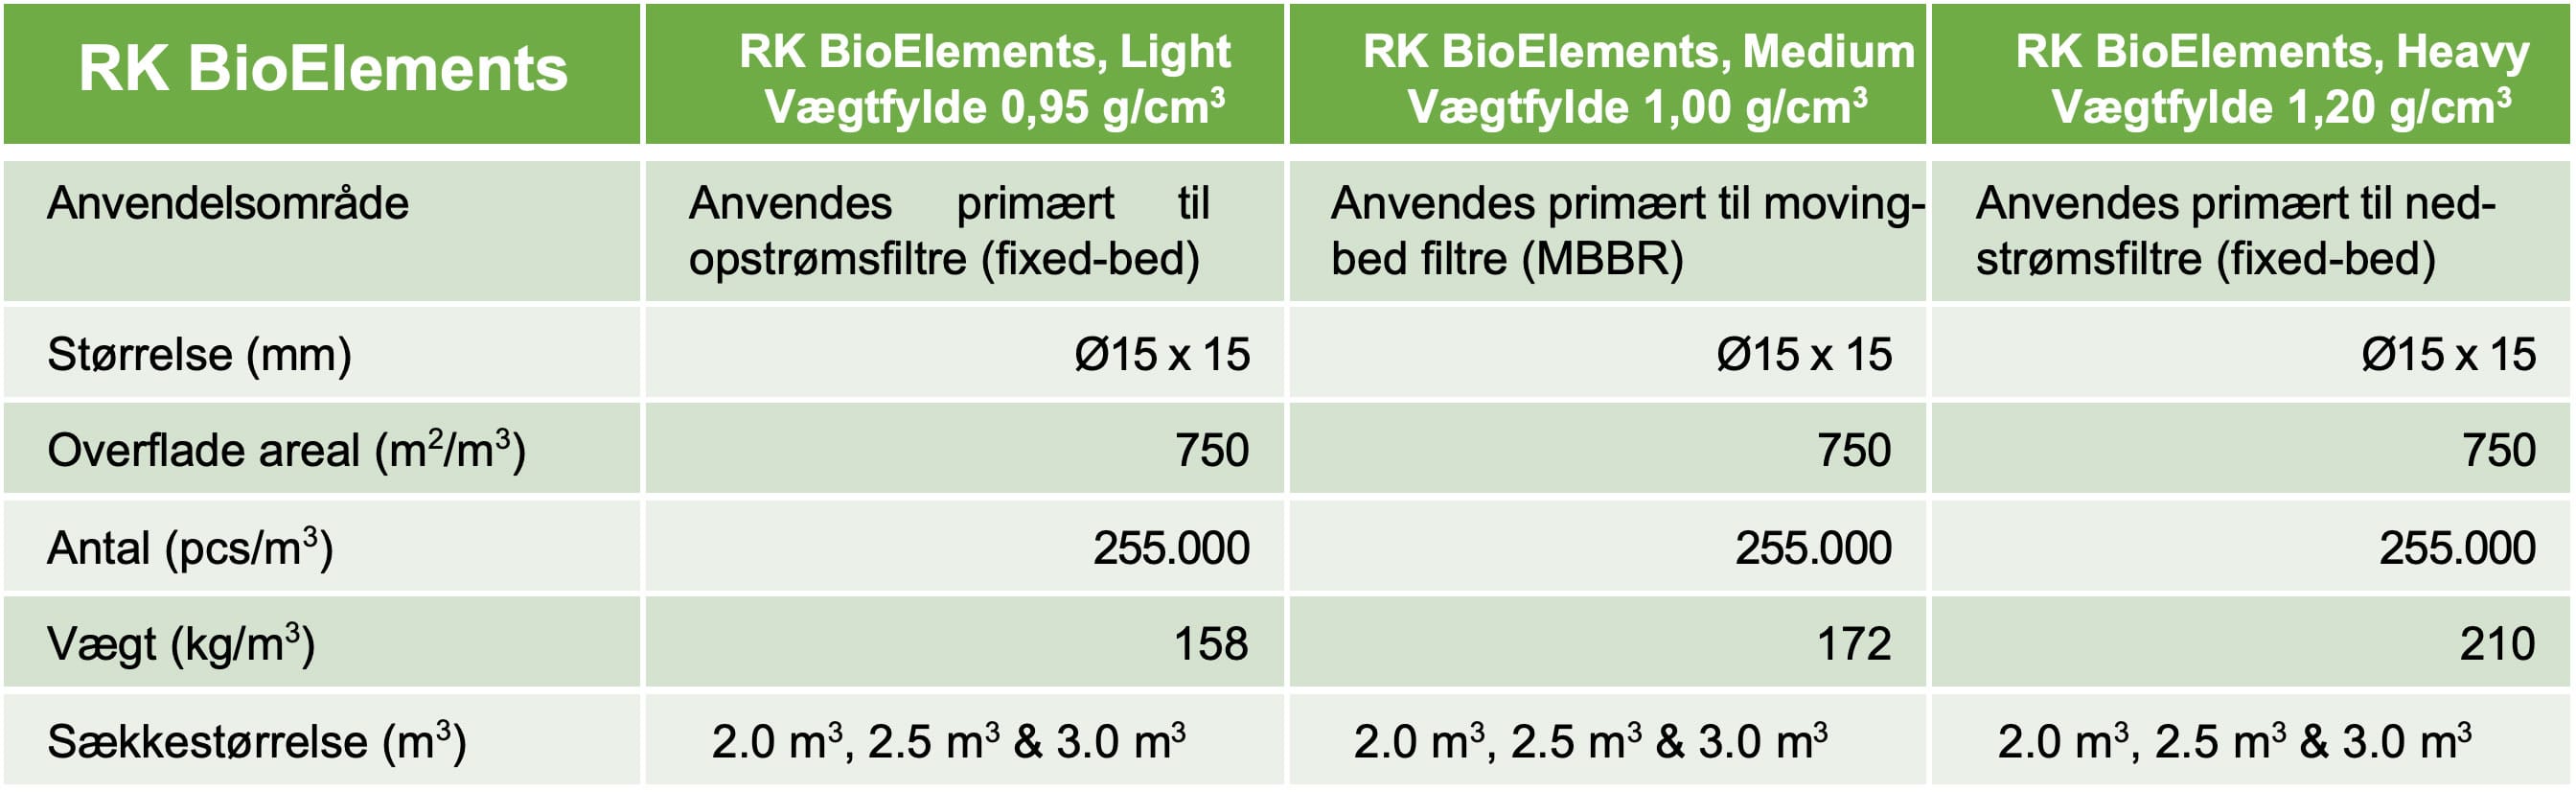 RK BioElements